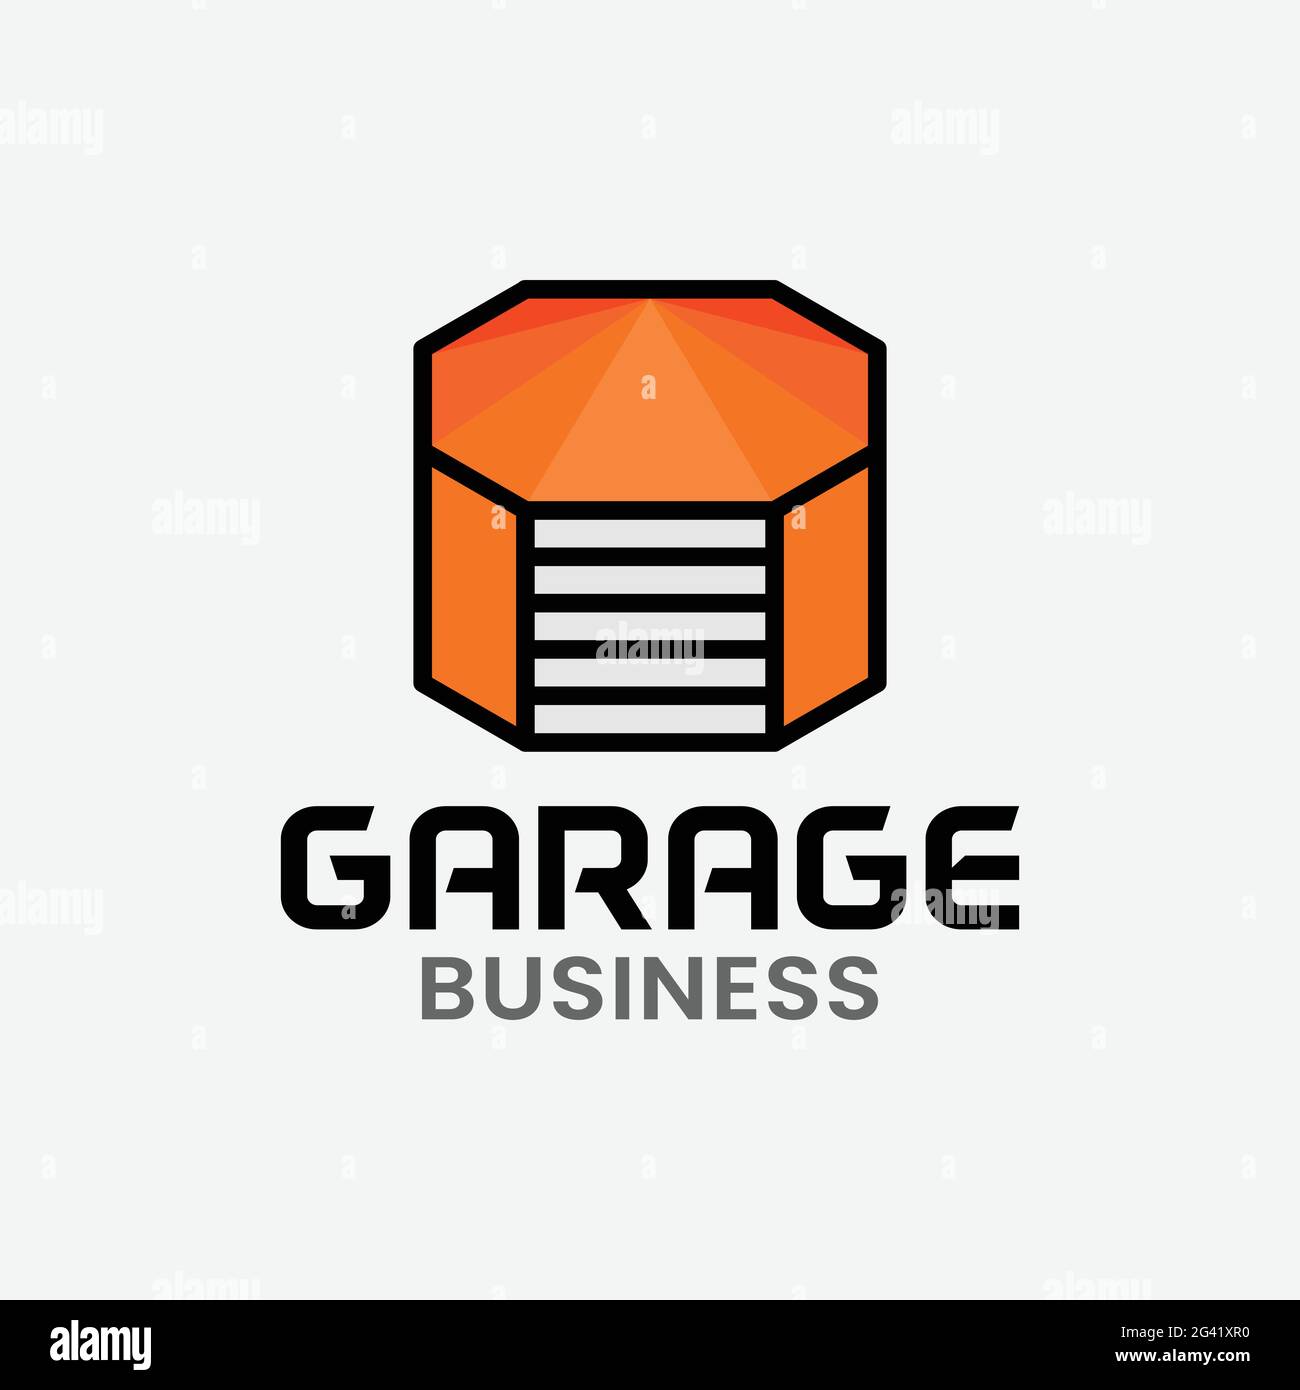 Garage arancione in modello di design con logo a forma di ottagono. Adatto per officine, officine, manutenzione veicoli Logo aziendale del marchio aziendale Illustrazione Vettoriale